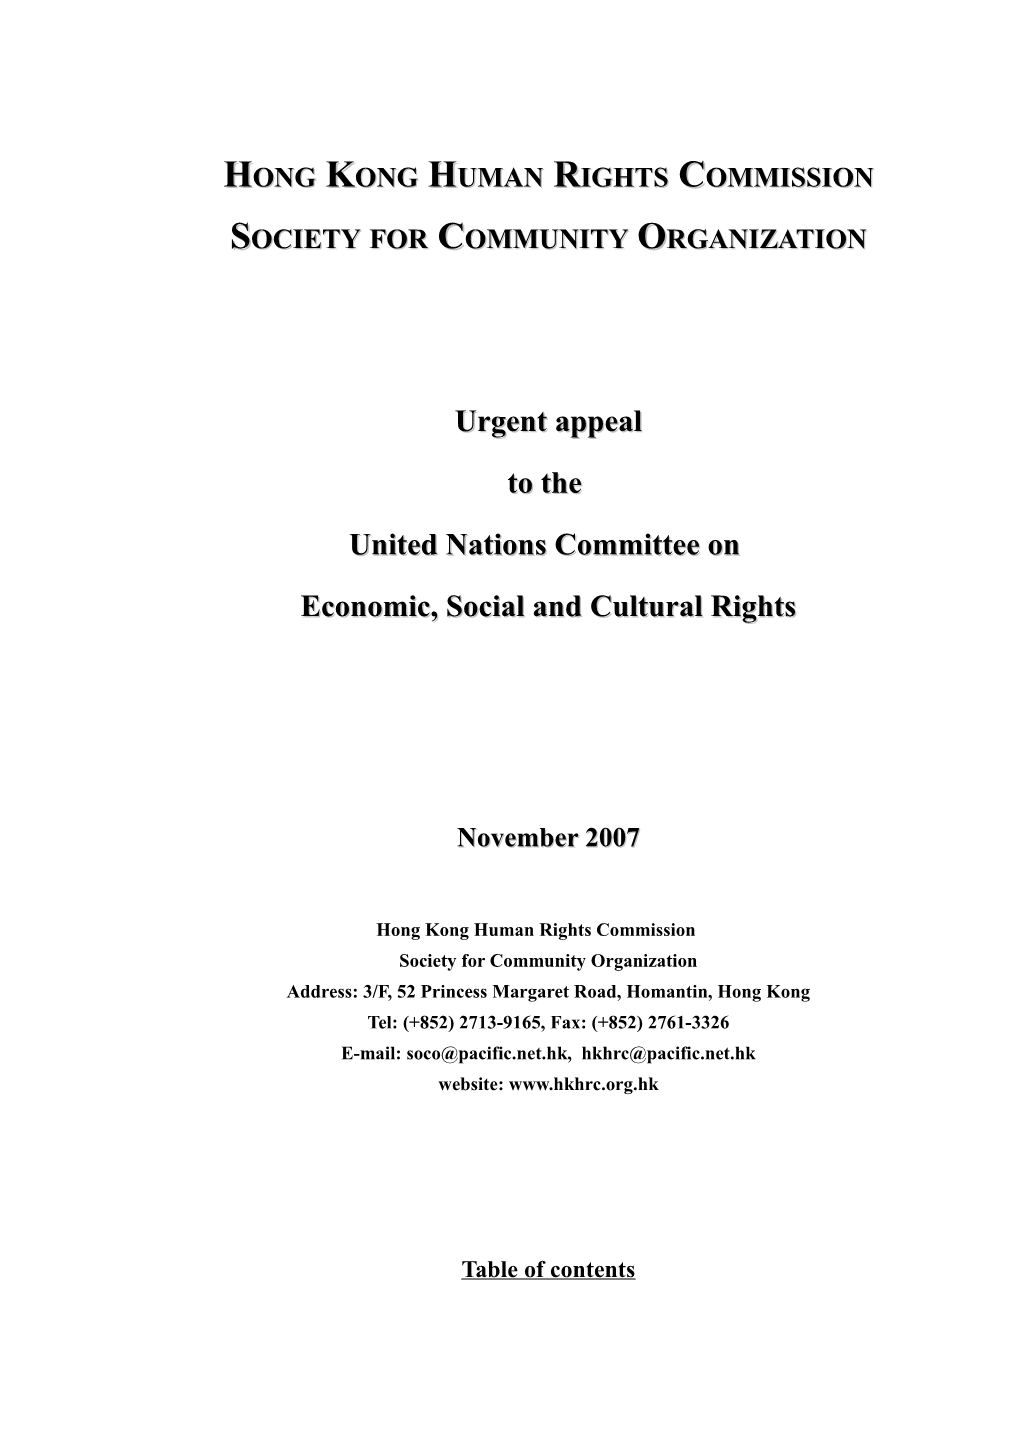 Society for Community Organization